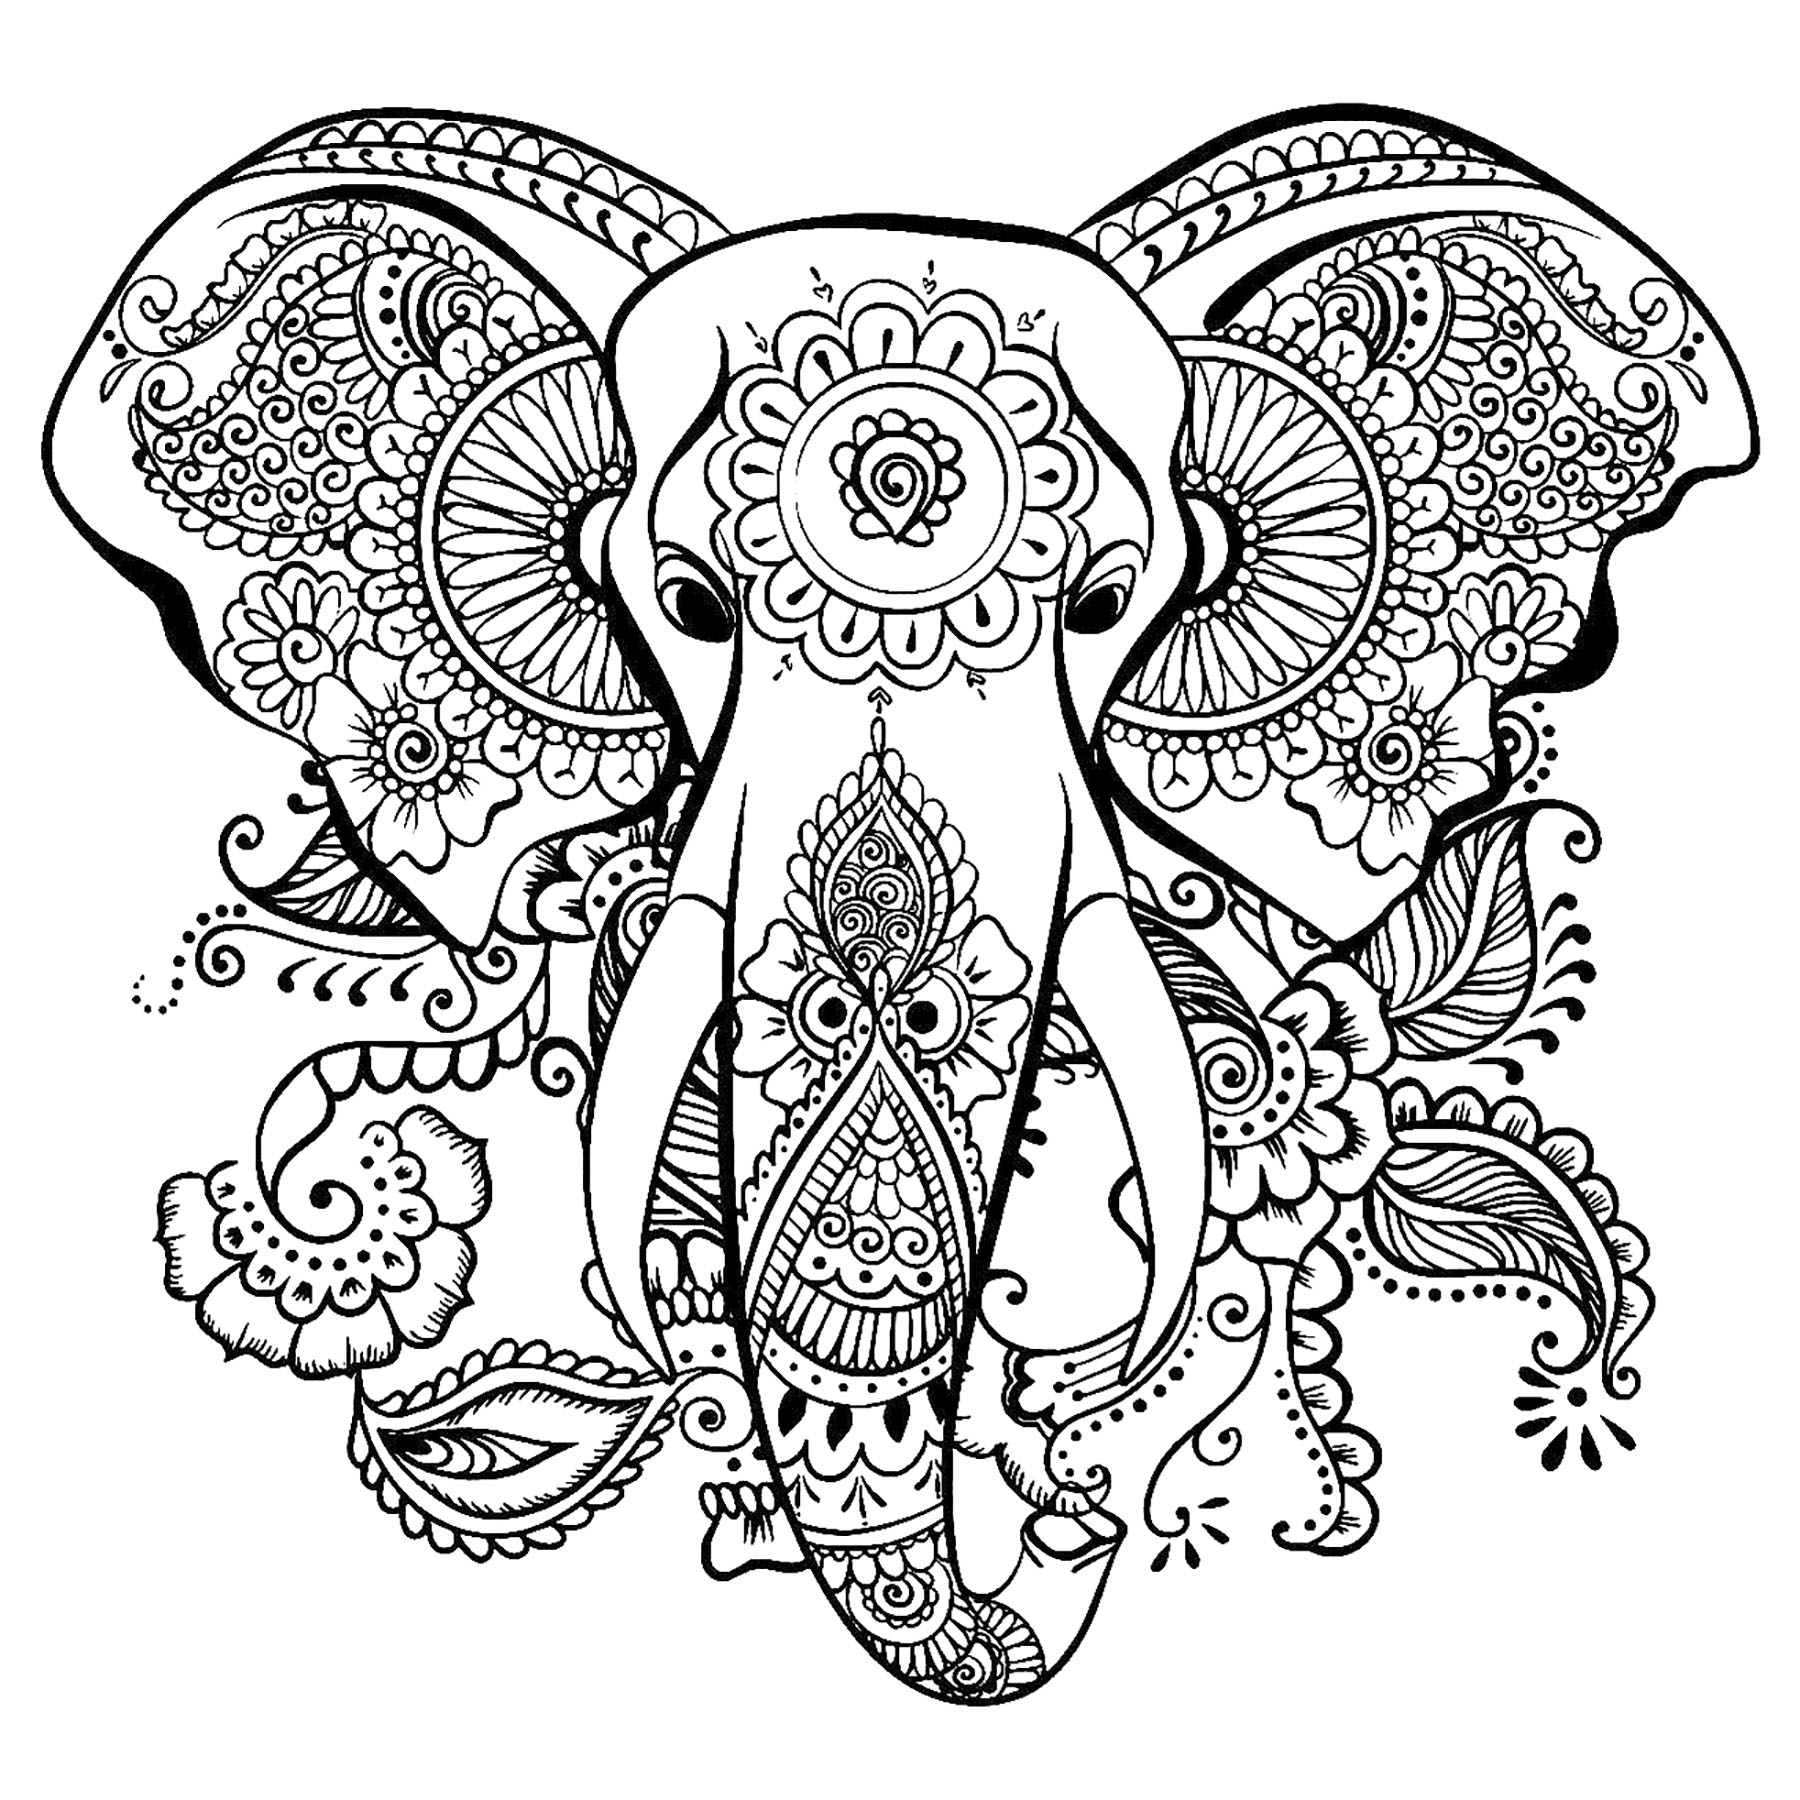 Cabeza de elefante para colorear, con bonitos dibujos